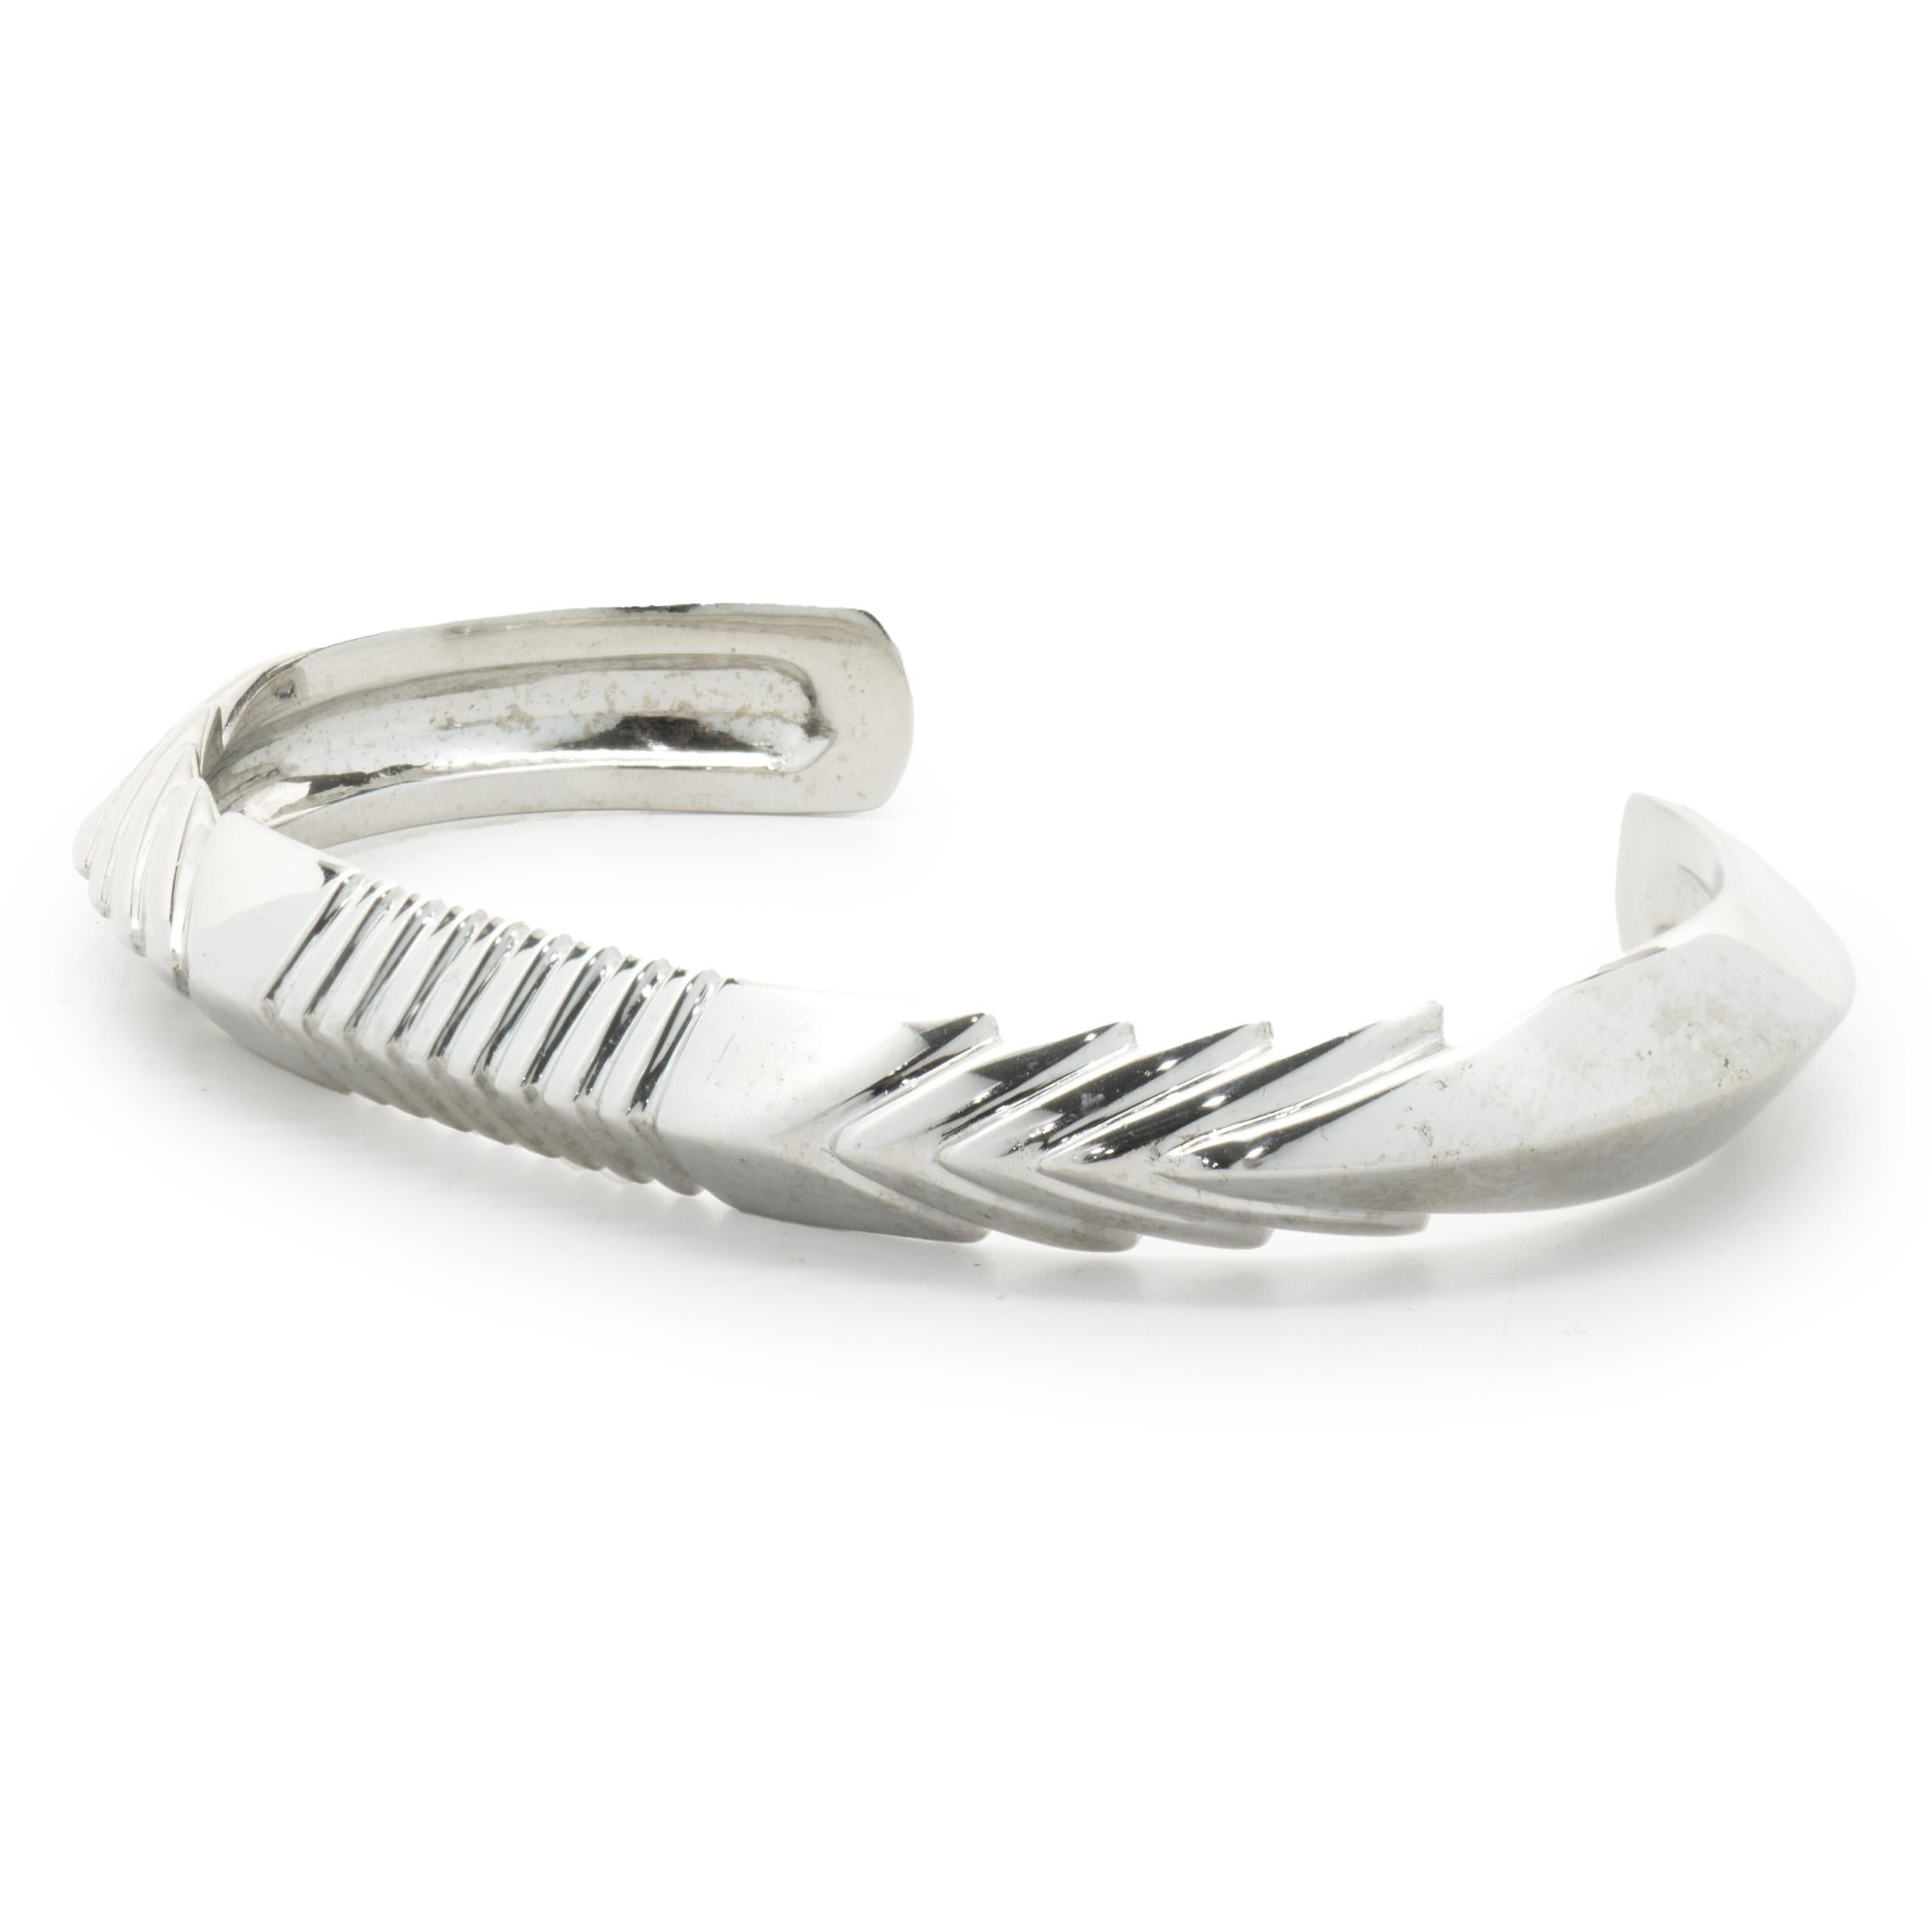 Matériau : Or blanc 14K
Dimensions : le bracelet convient à un poignet de 6.5 pouces maximum.
Poids : 42,72 grammes